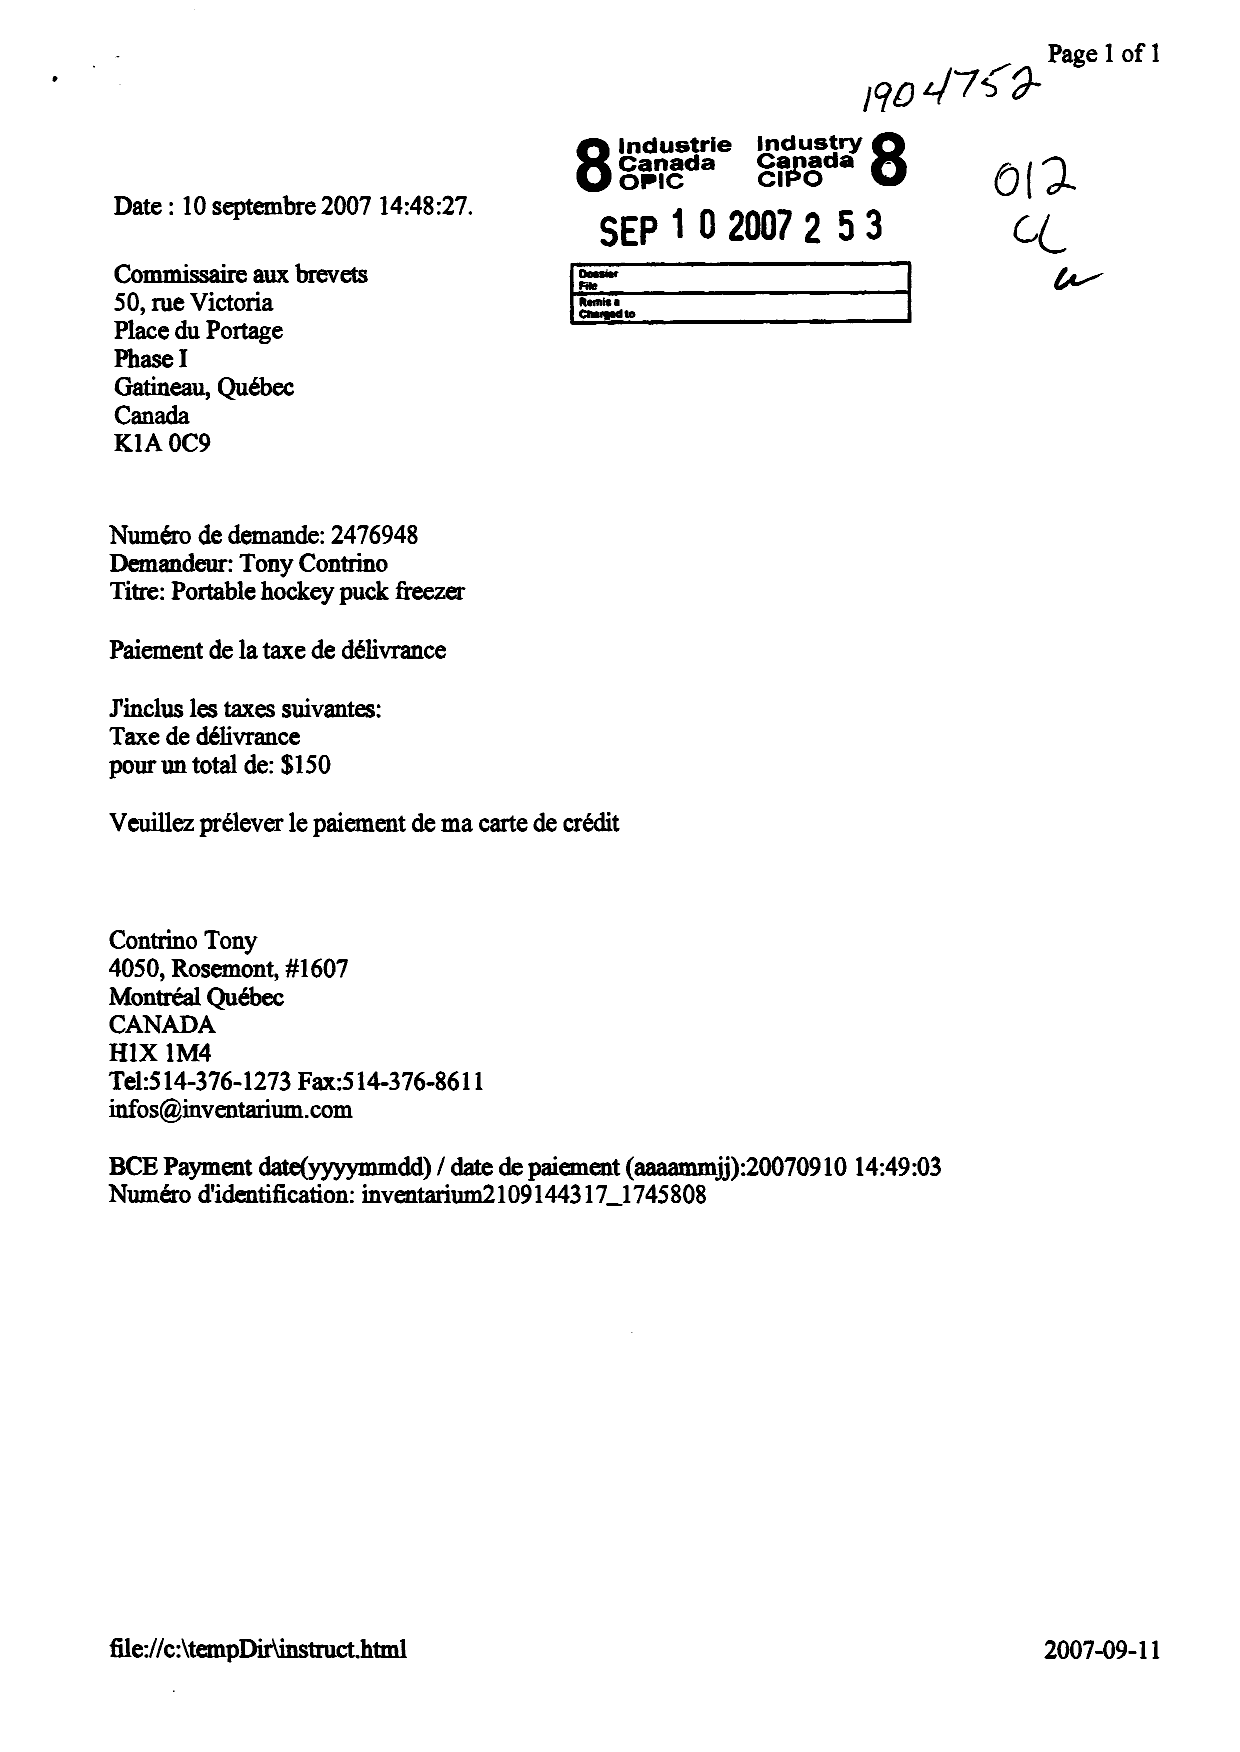 Document de brevet canadien 2476948. Correspondance 20070910. Image 1 de 1